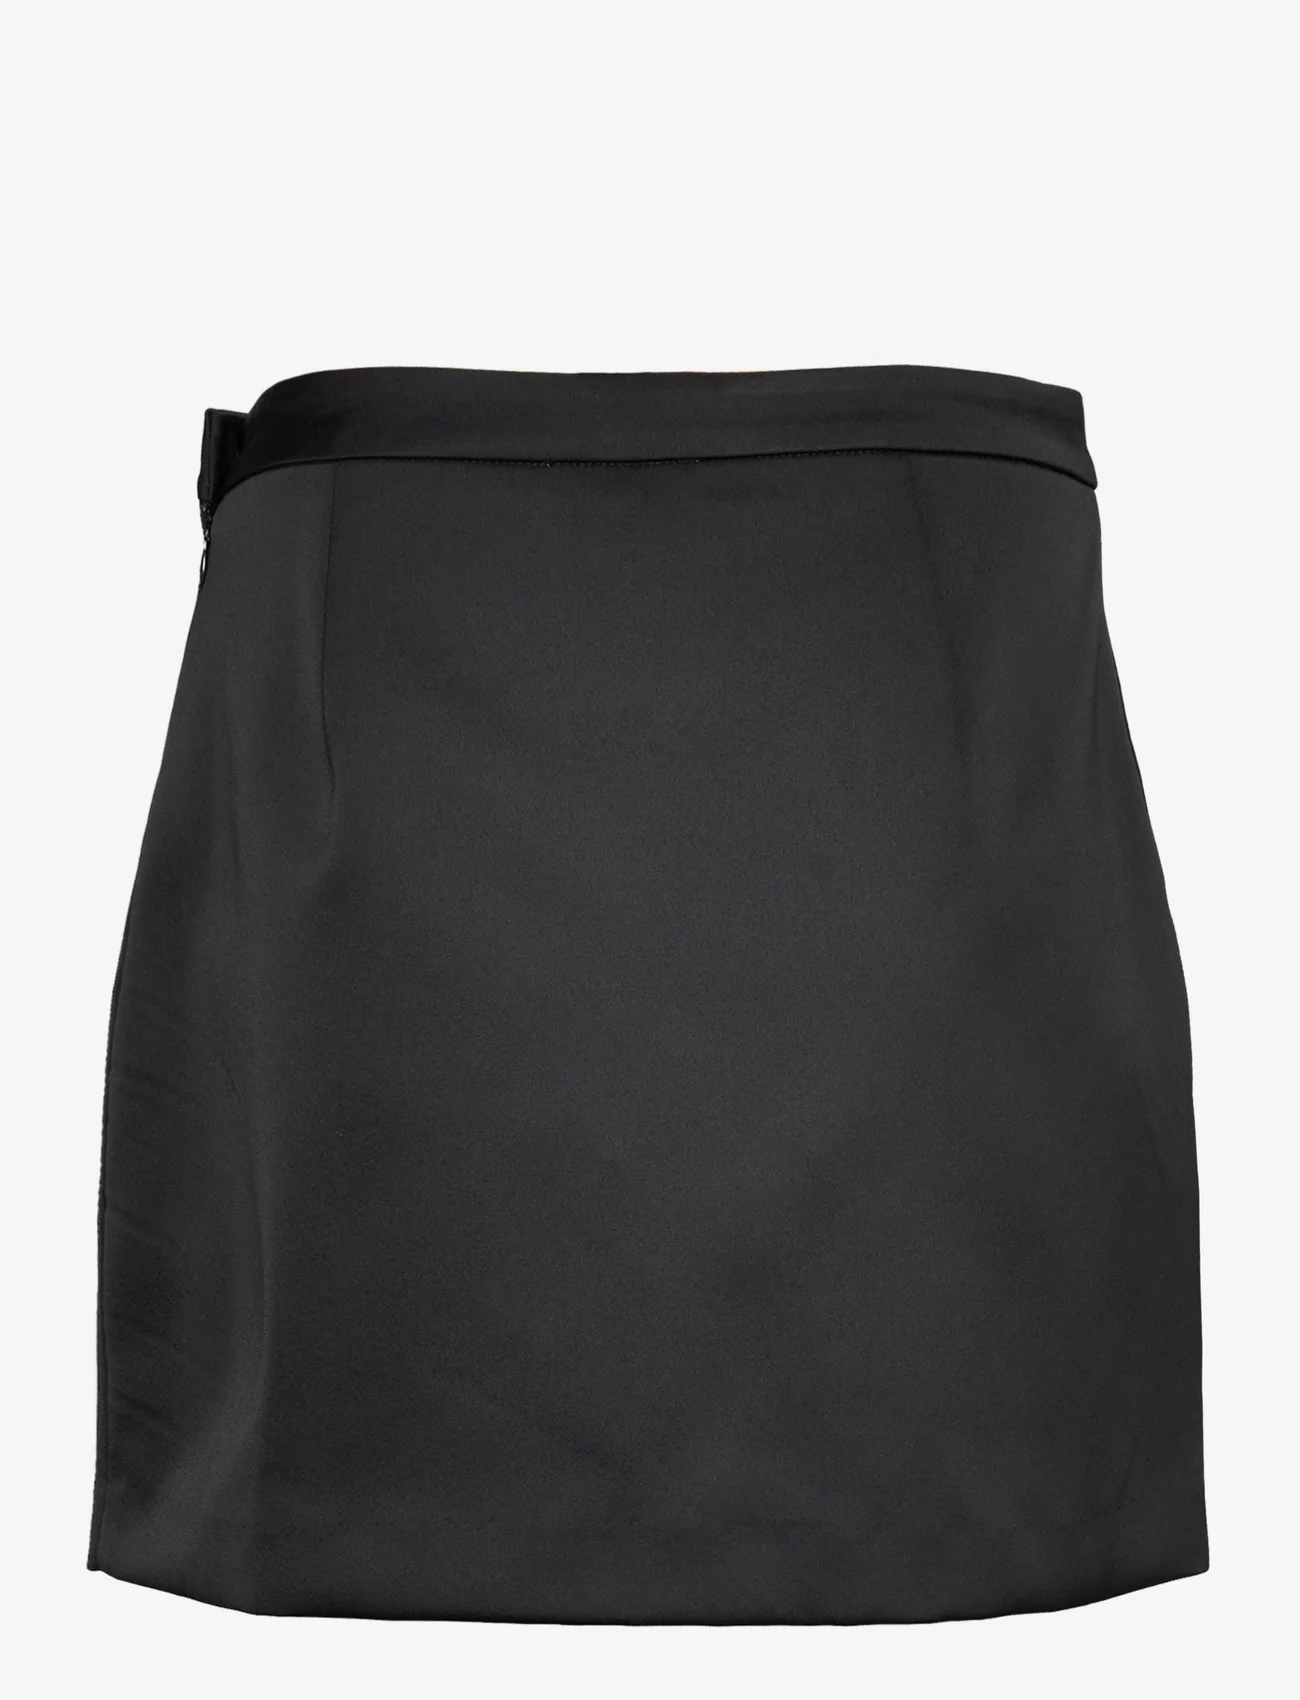 Cras - Samycras Skirt - korte nederdele - black - 1